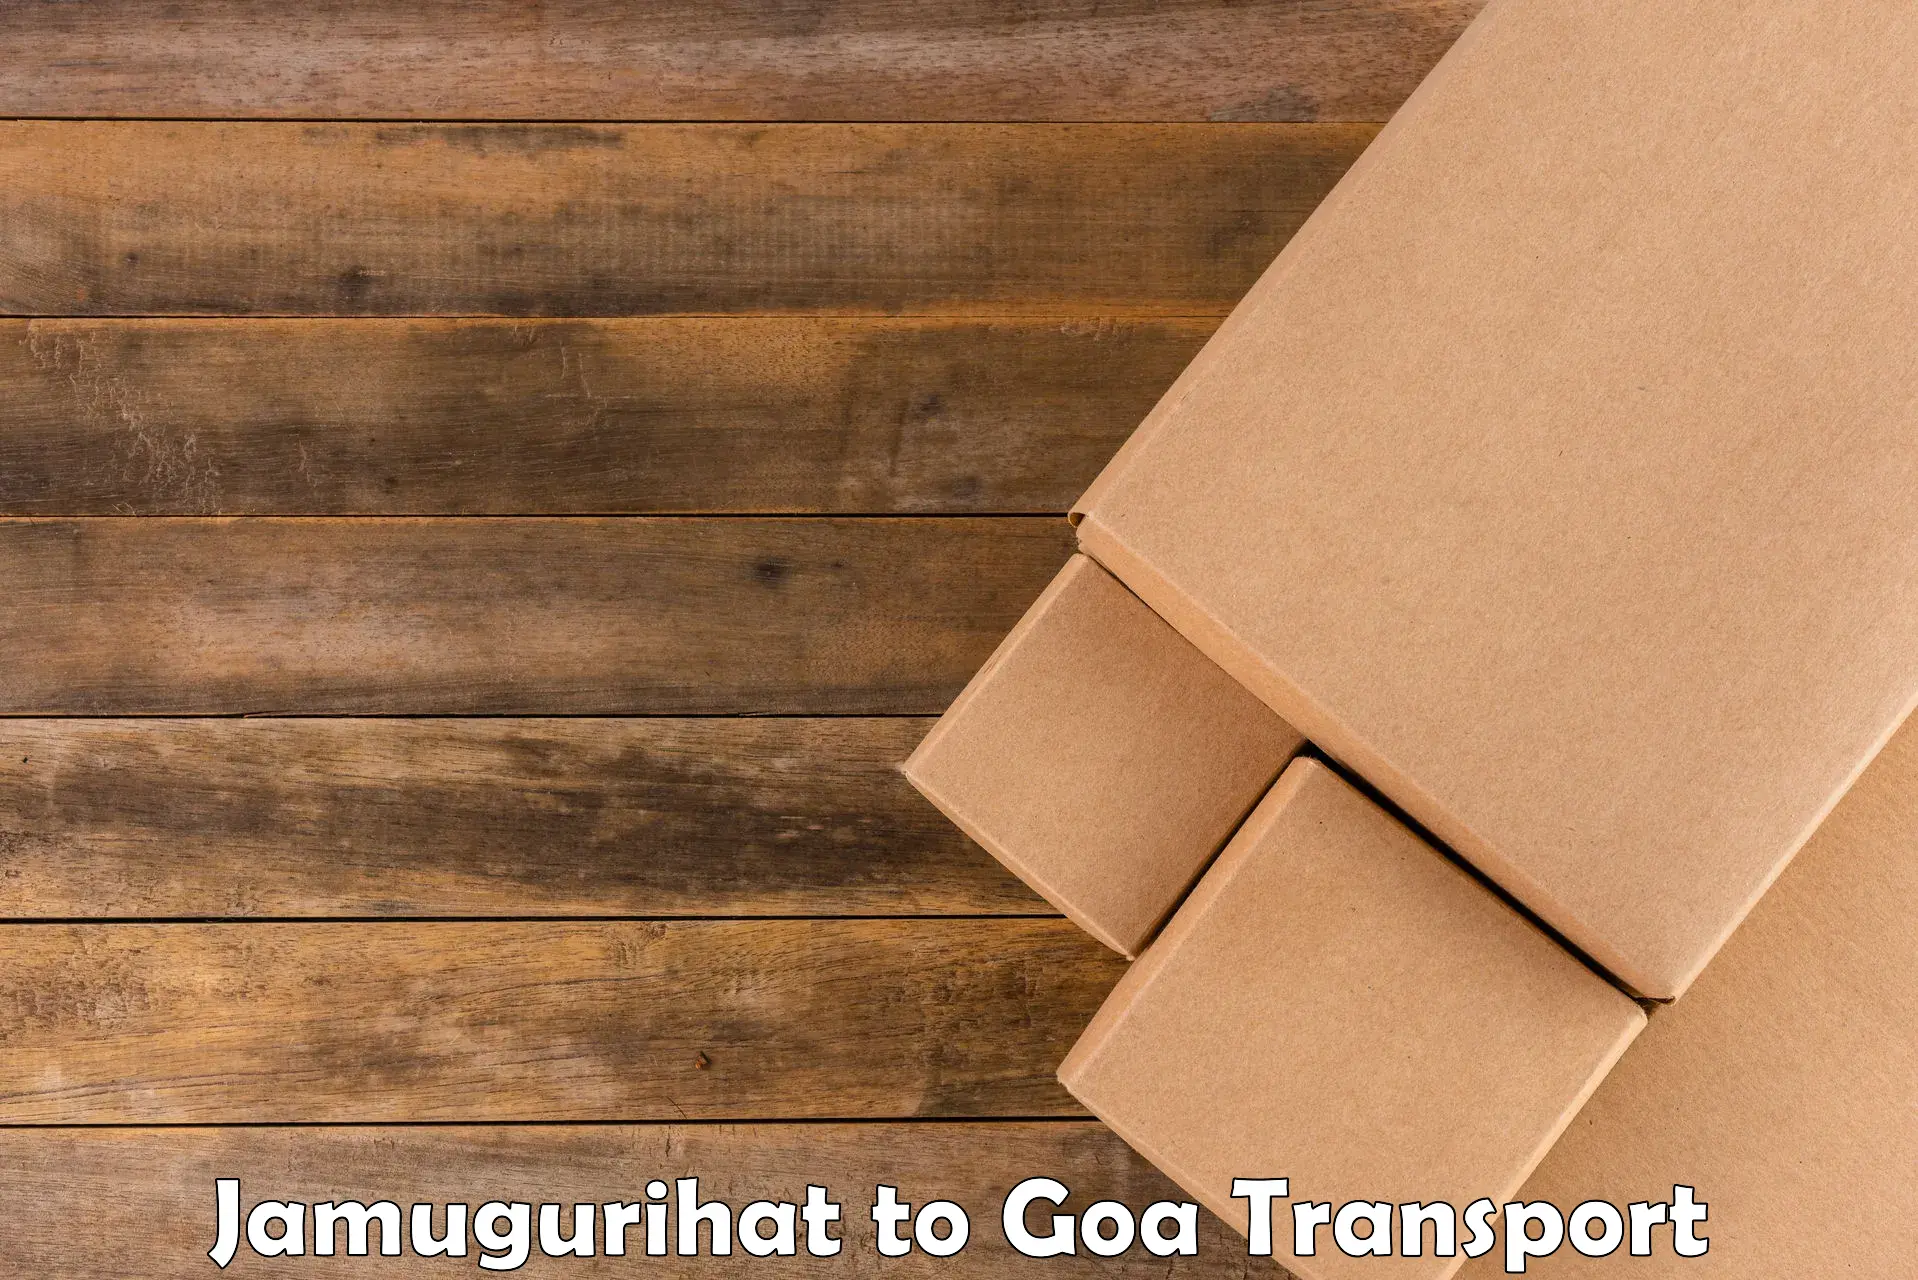 Intercity transport Jamugurihat to Goa